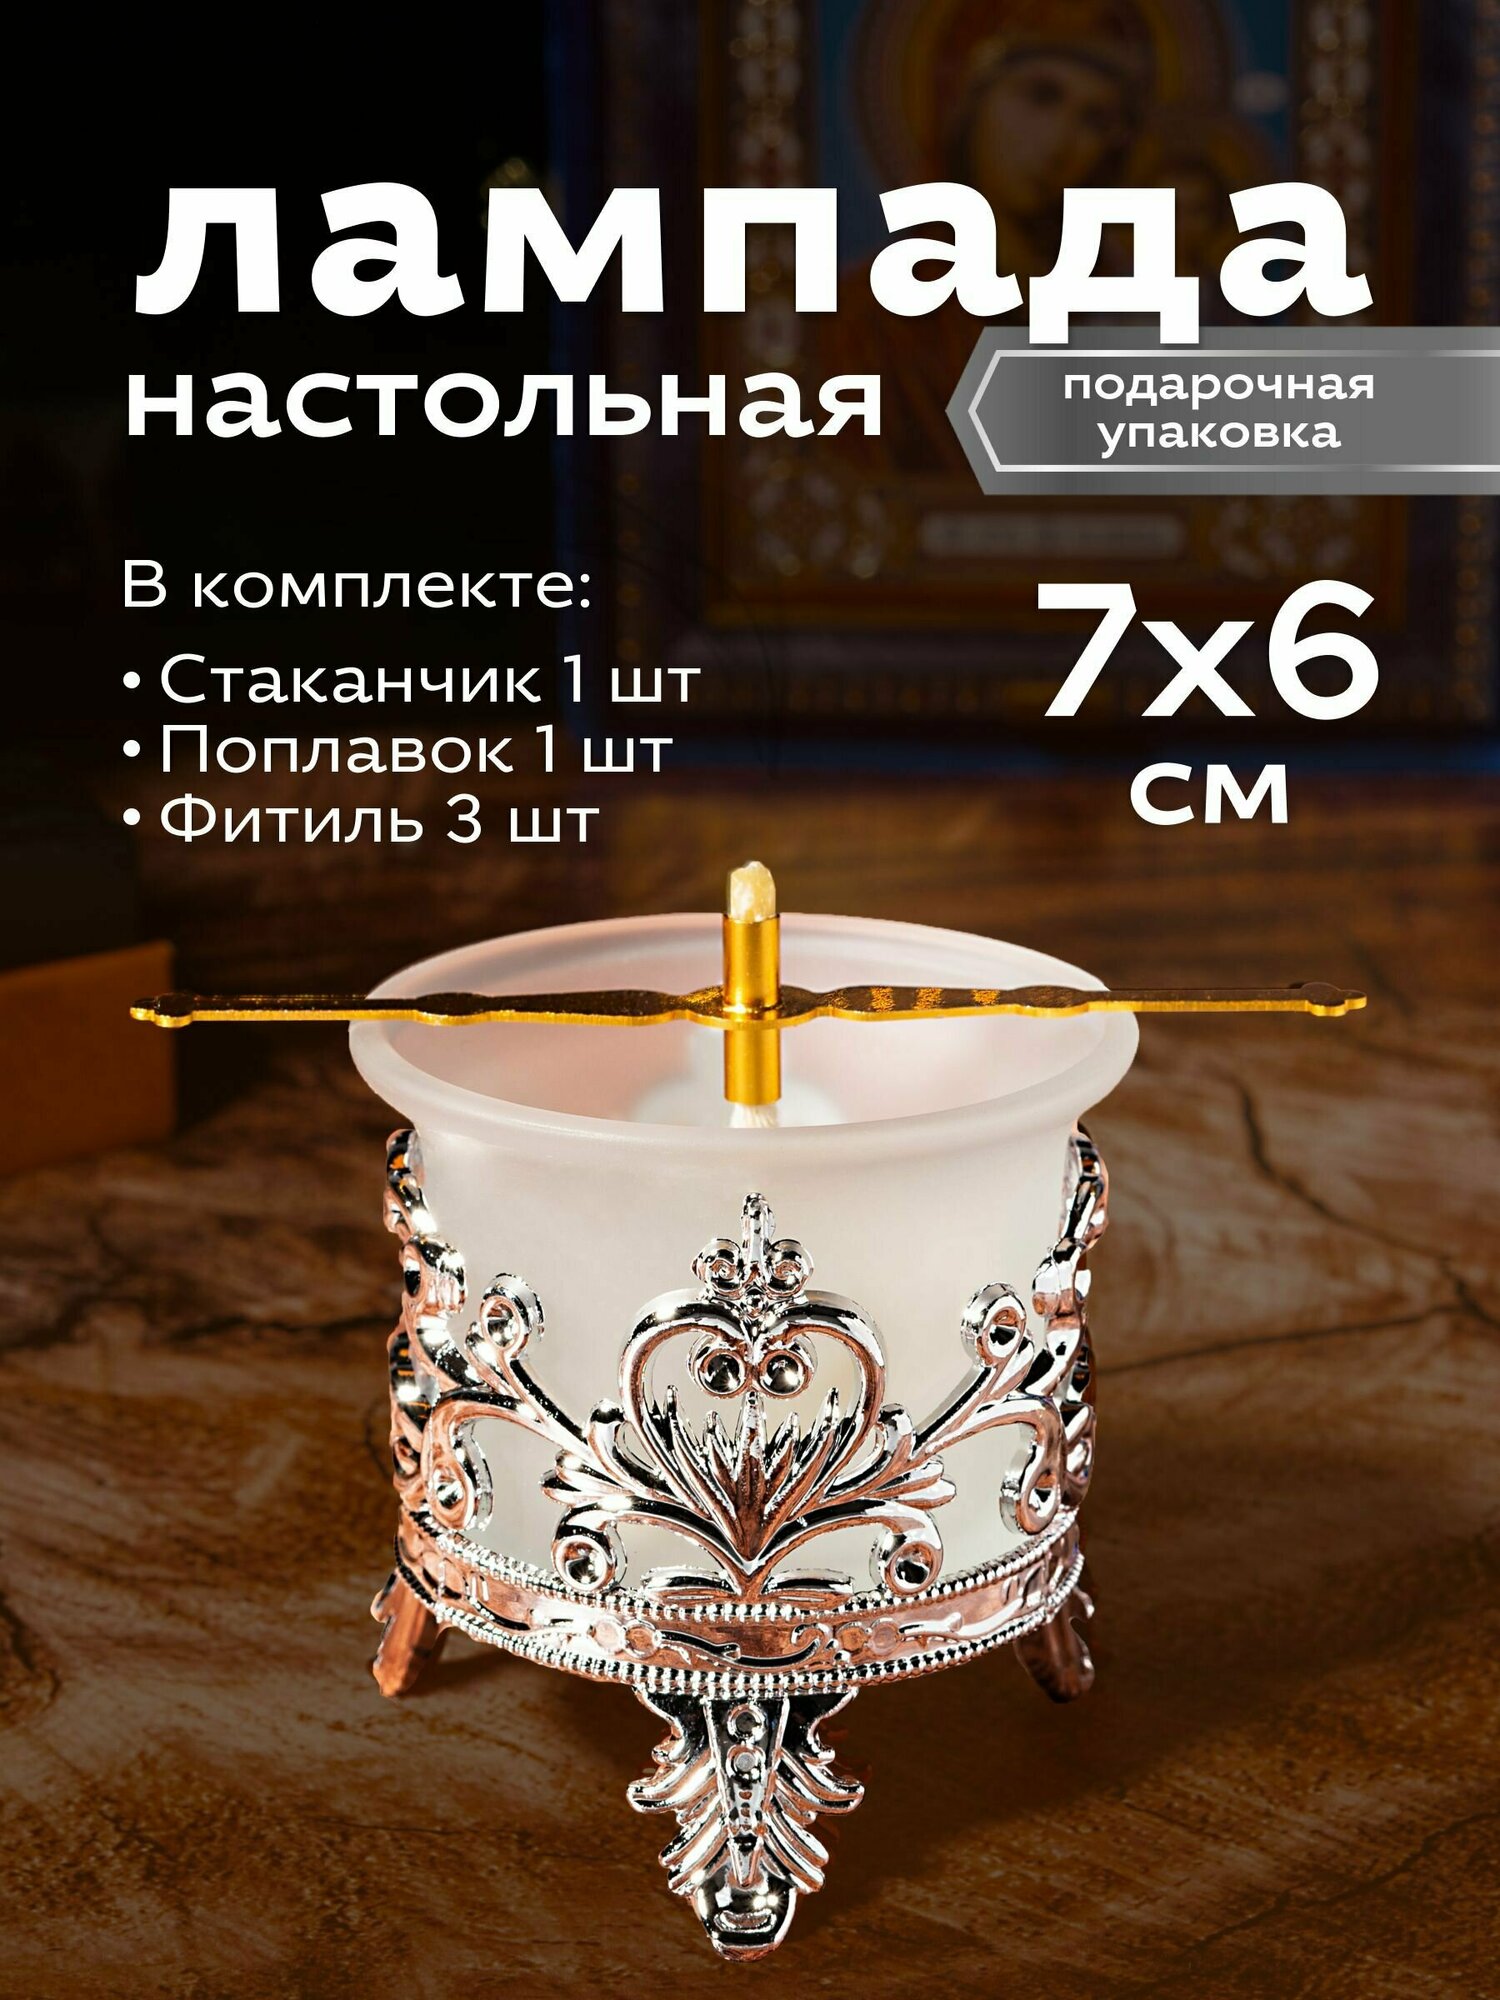 Набор Лампадный №12 - Лампада с подлампадником (цвет Серебро)- 1 шт; Фитиль - 3 шт; Поплавок - 1 шт.